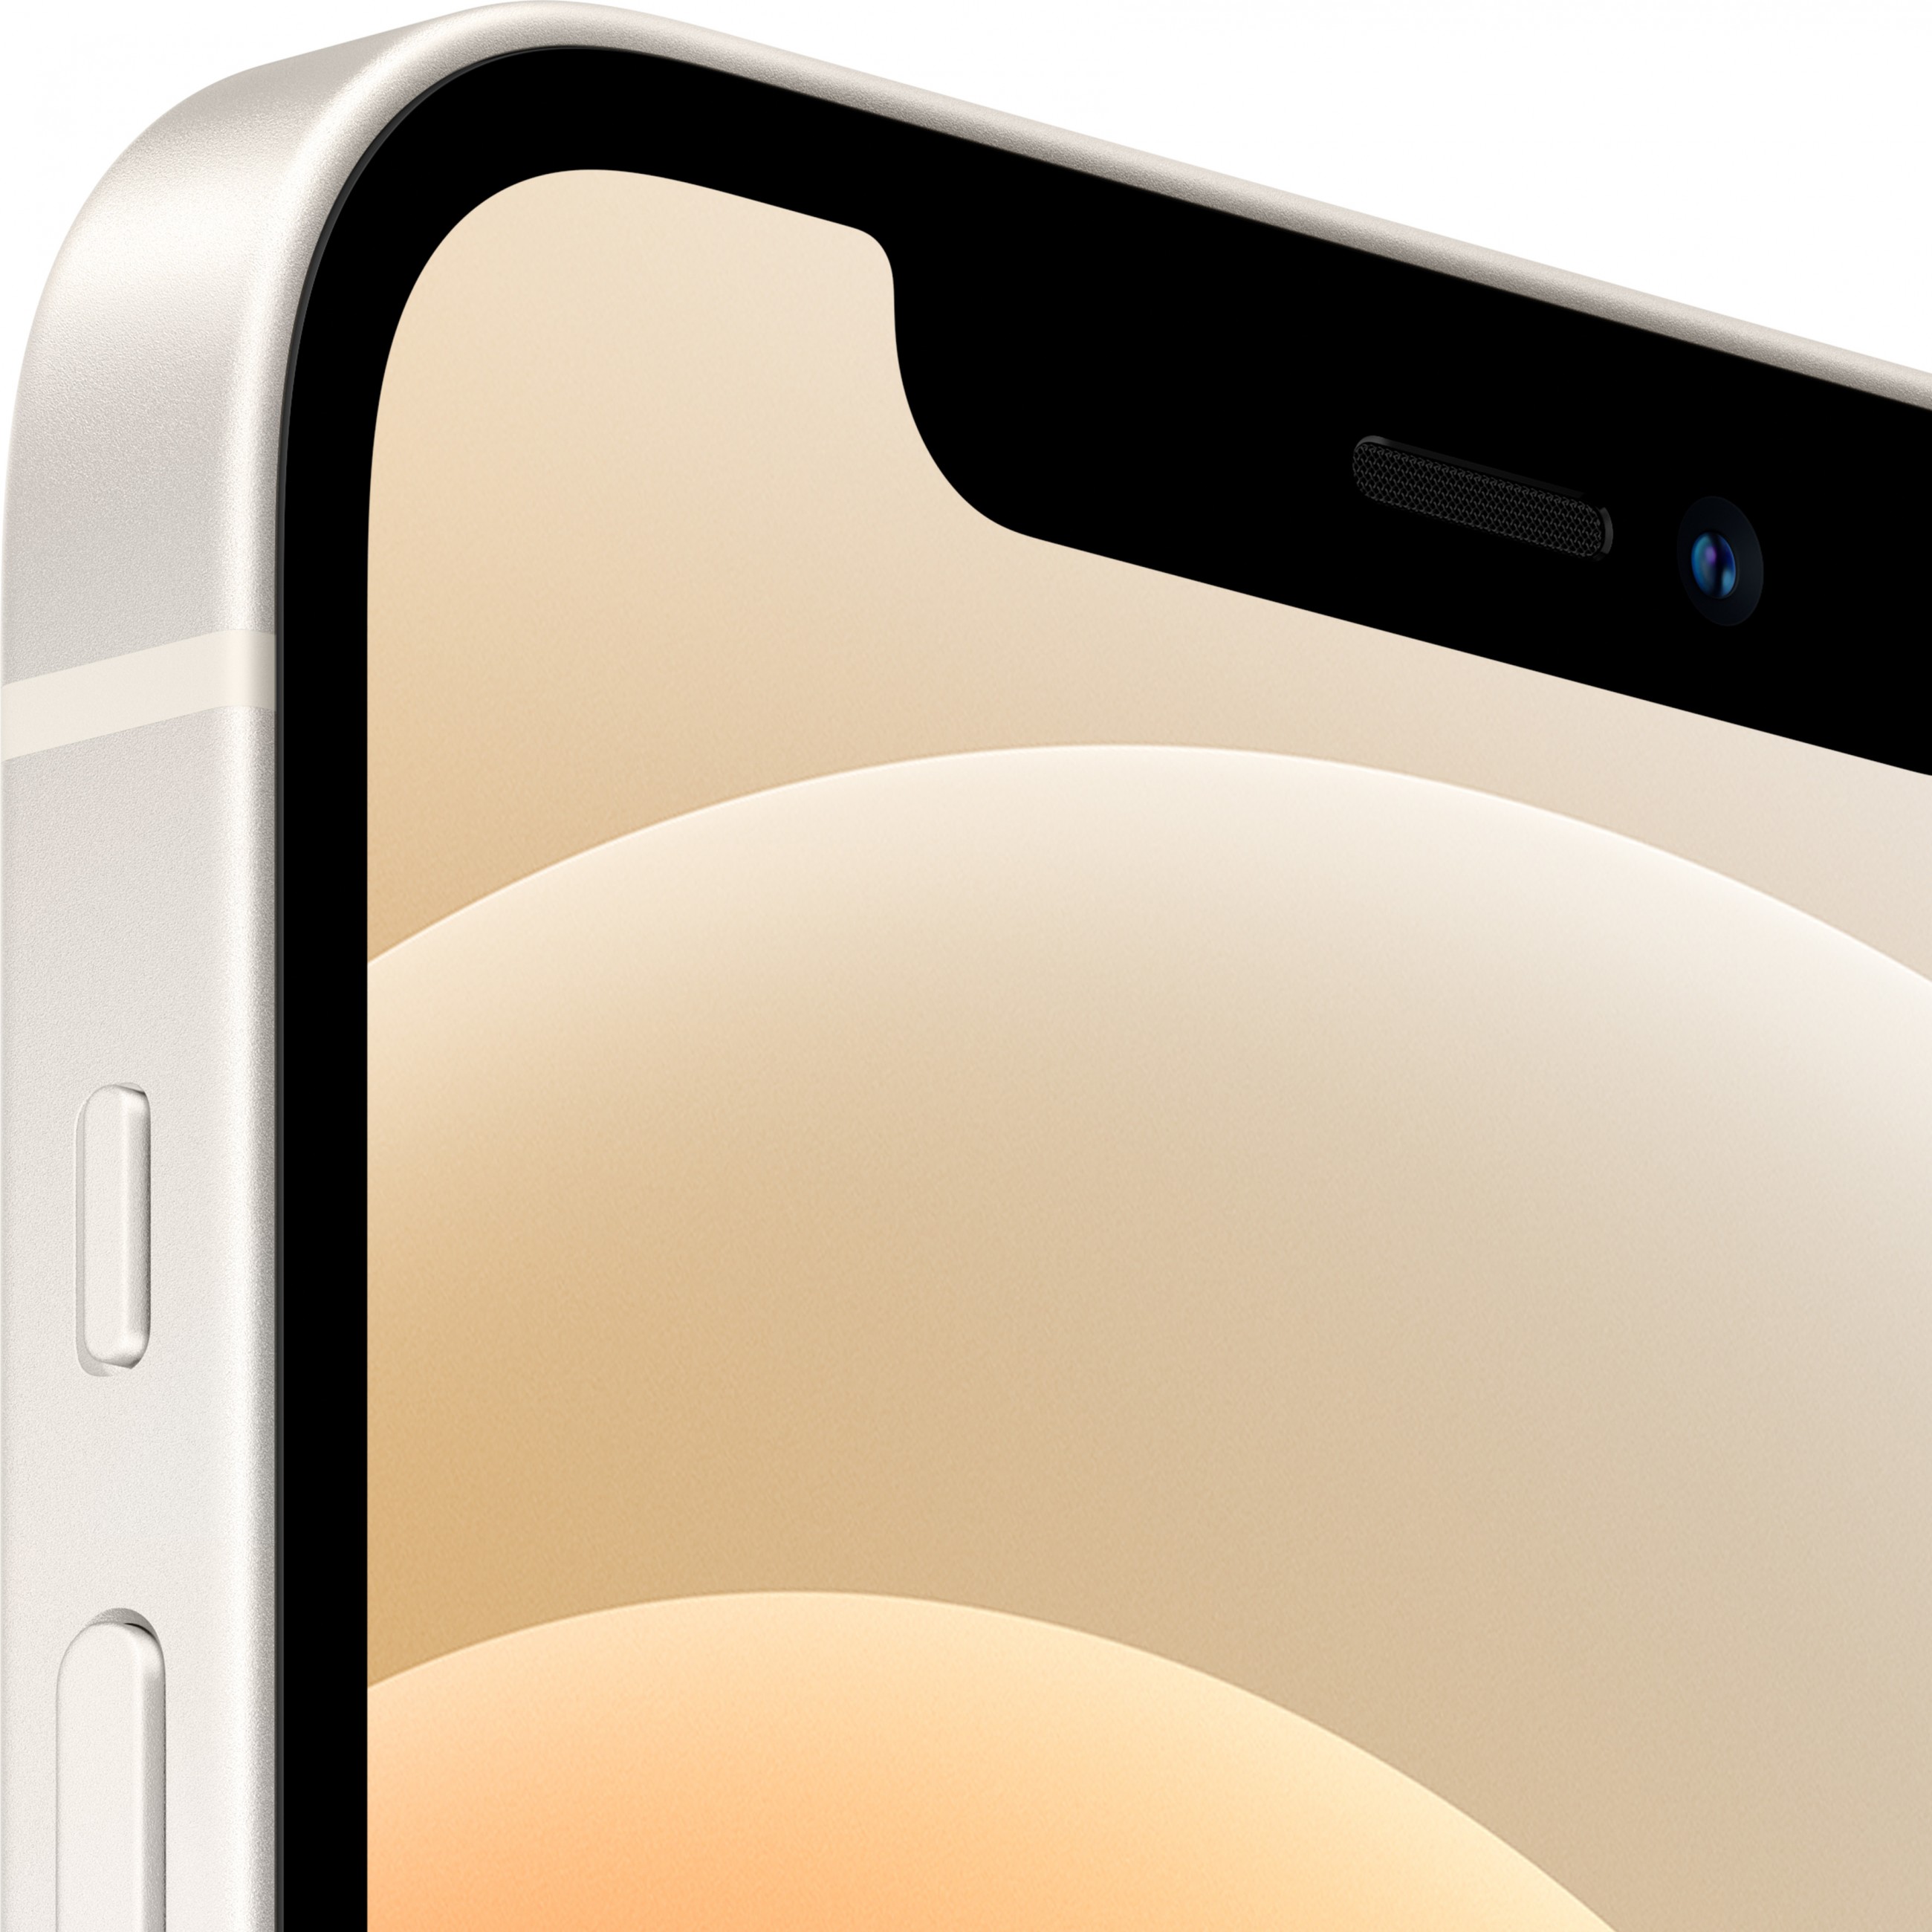 Apple iPhone 12 15,5 cm (6.1 Zoll) Dual-SIM iOS 14 5G 64 GB Weiß